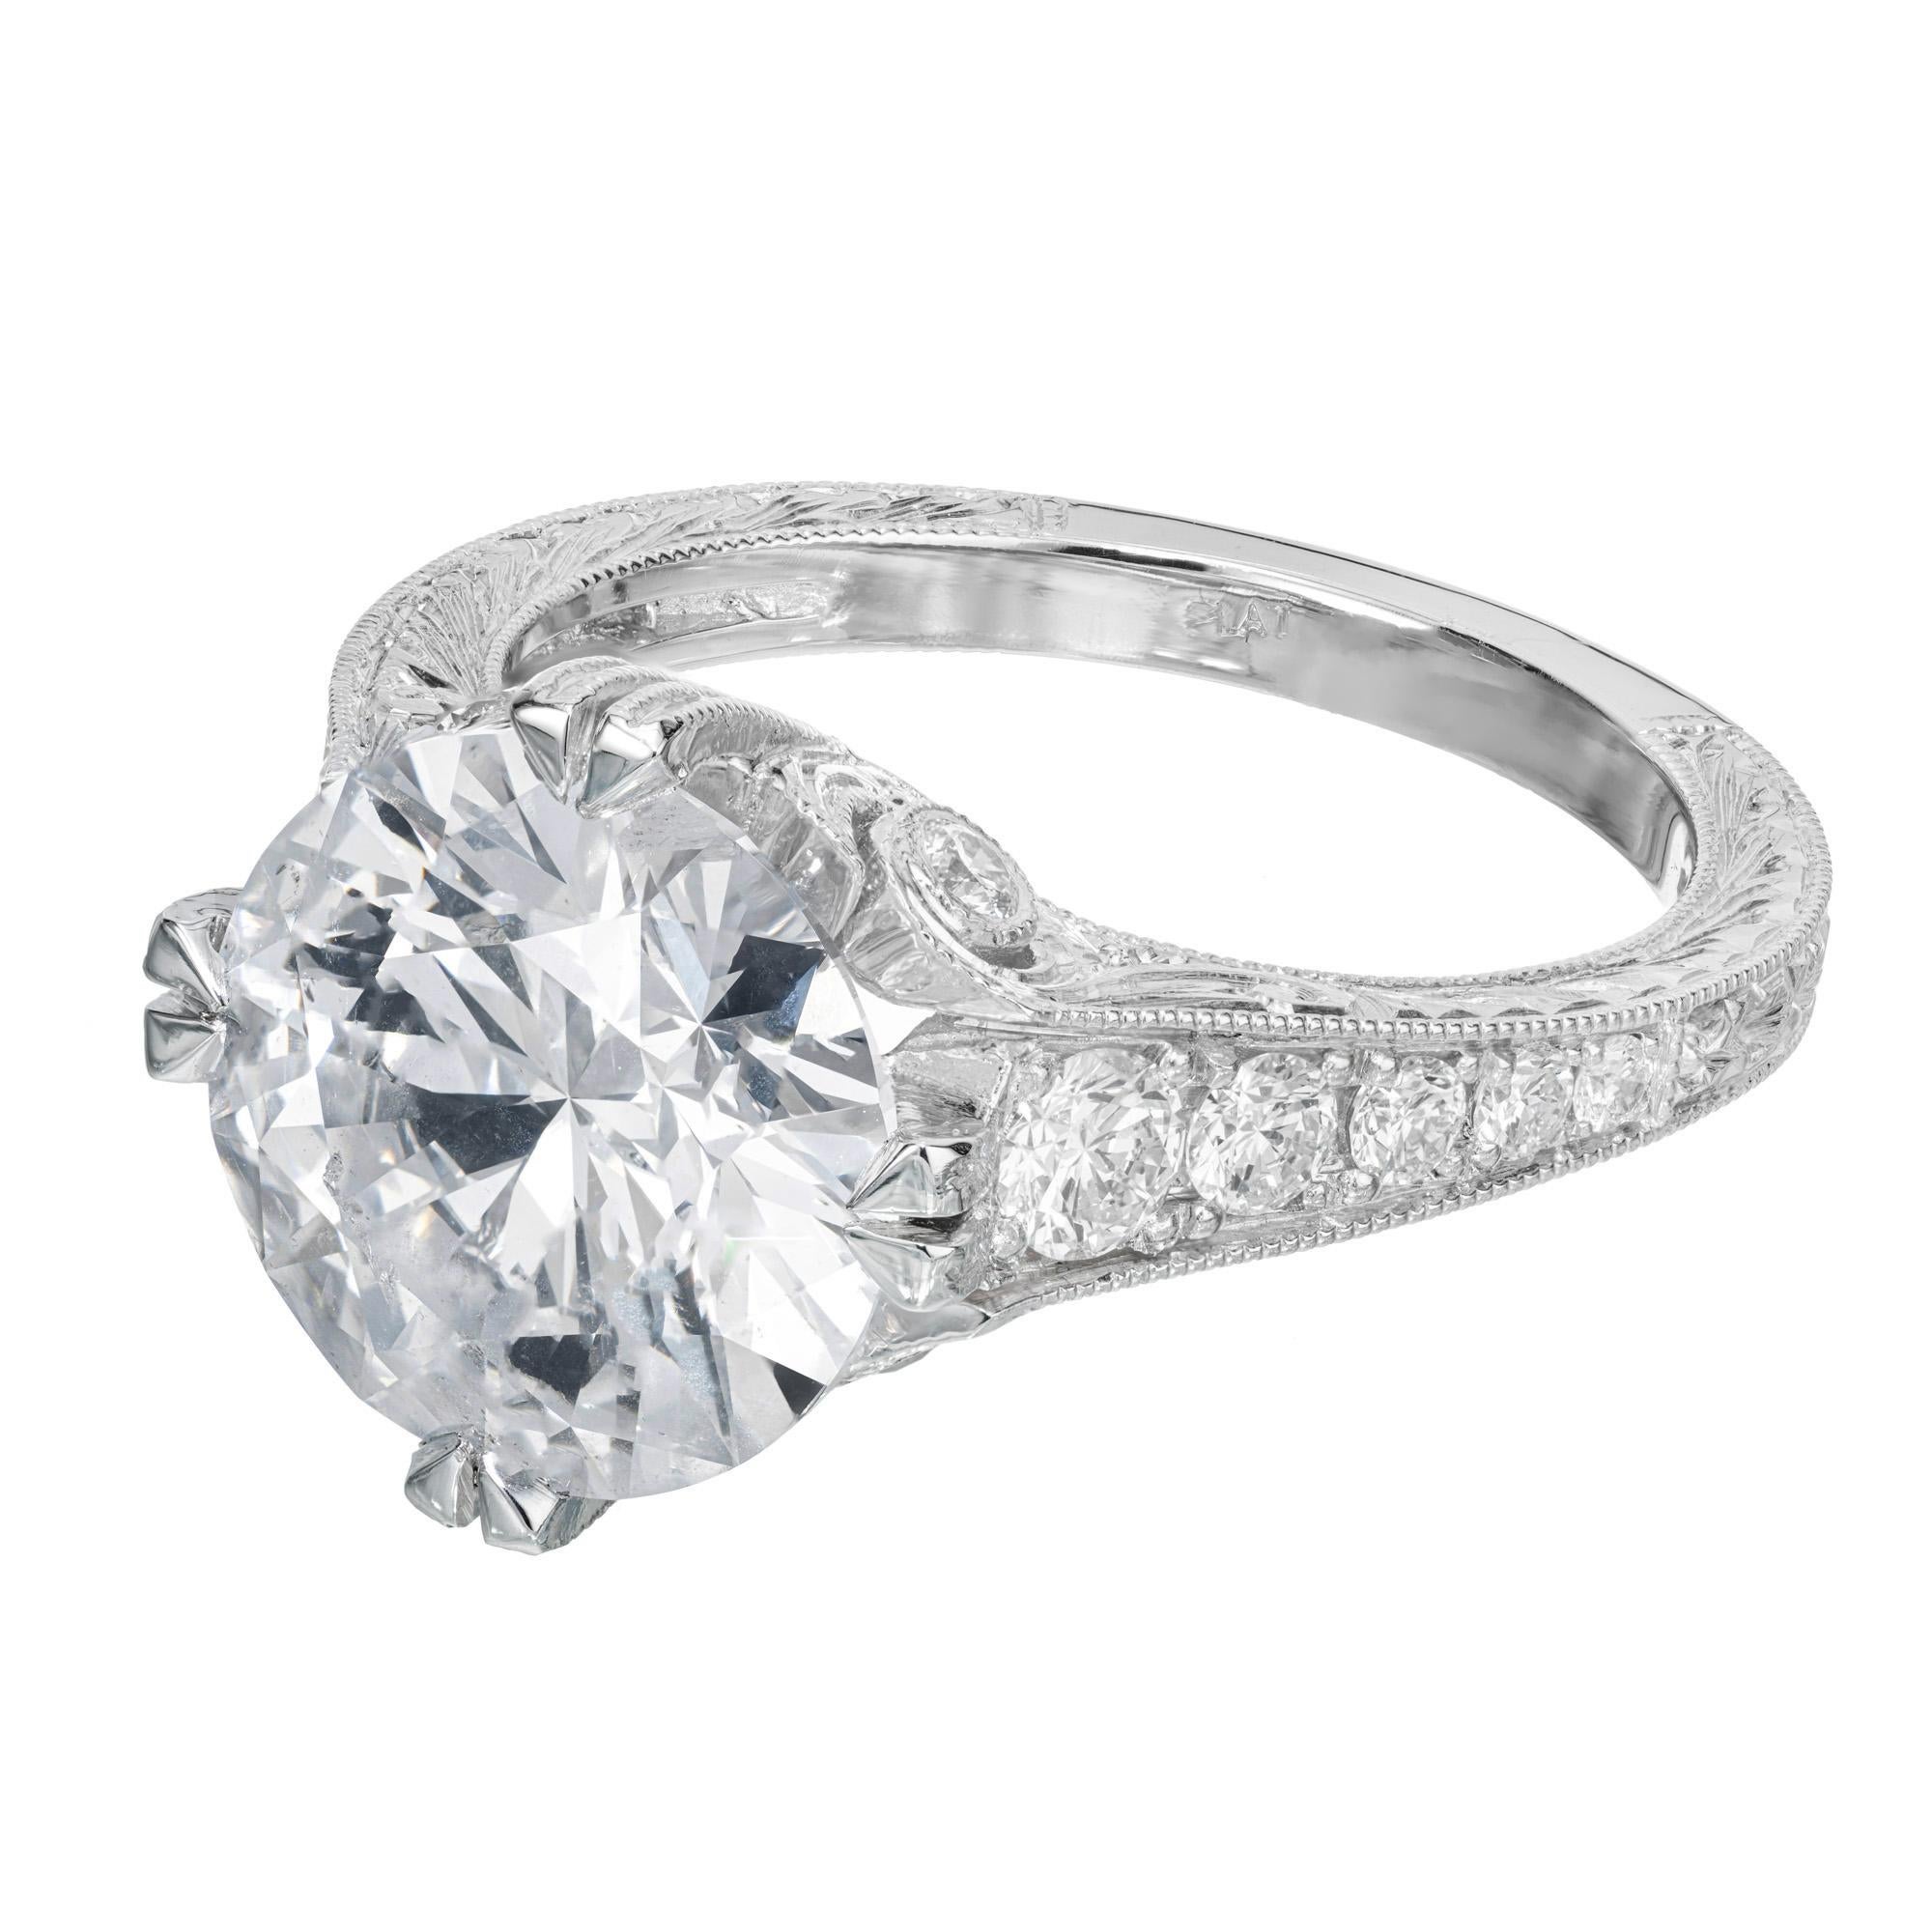 Verlobungsring mit Diamanten. GIA-zertifizierter Diamant im europäischen Schliff mit 4,10 Karat in einer Platinfassung mit 14 runden Diamanten im Brillantschliff. Der Diamant stammt aus einem Nachlass aus den 1920er Jahren. Die Platinfassung ist